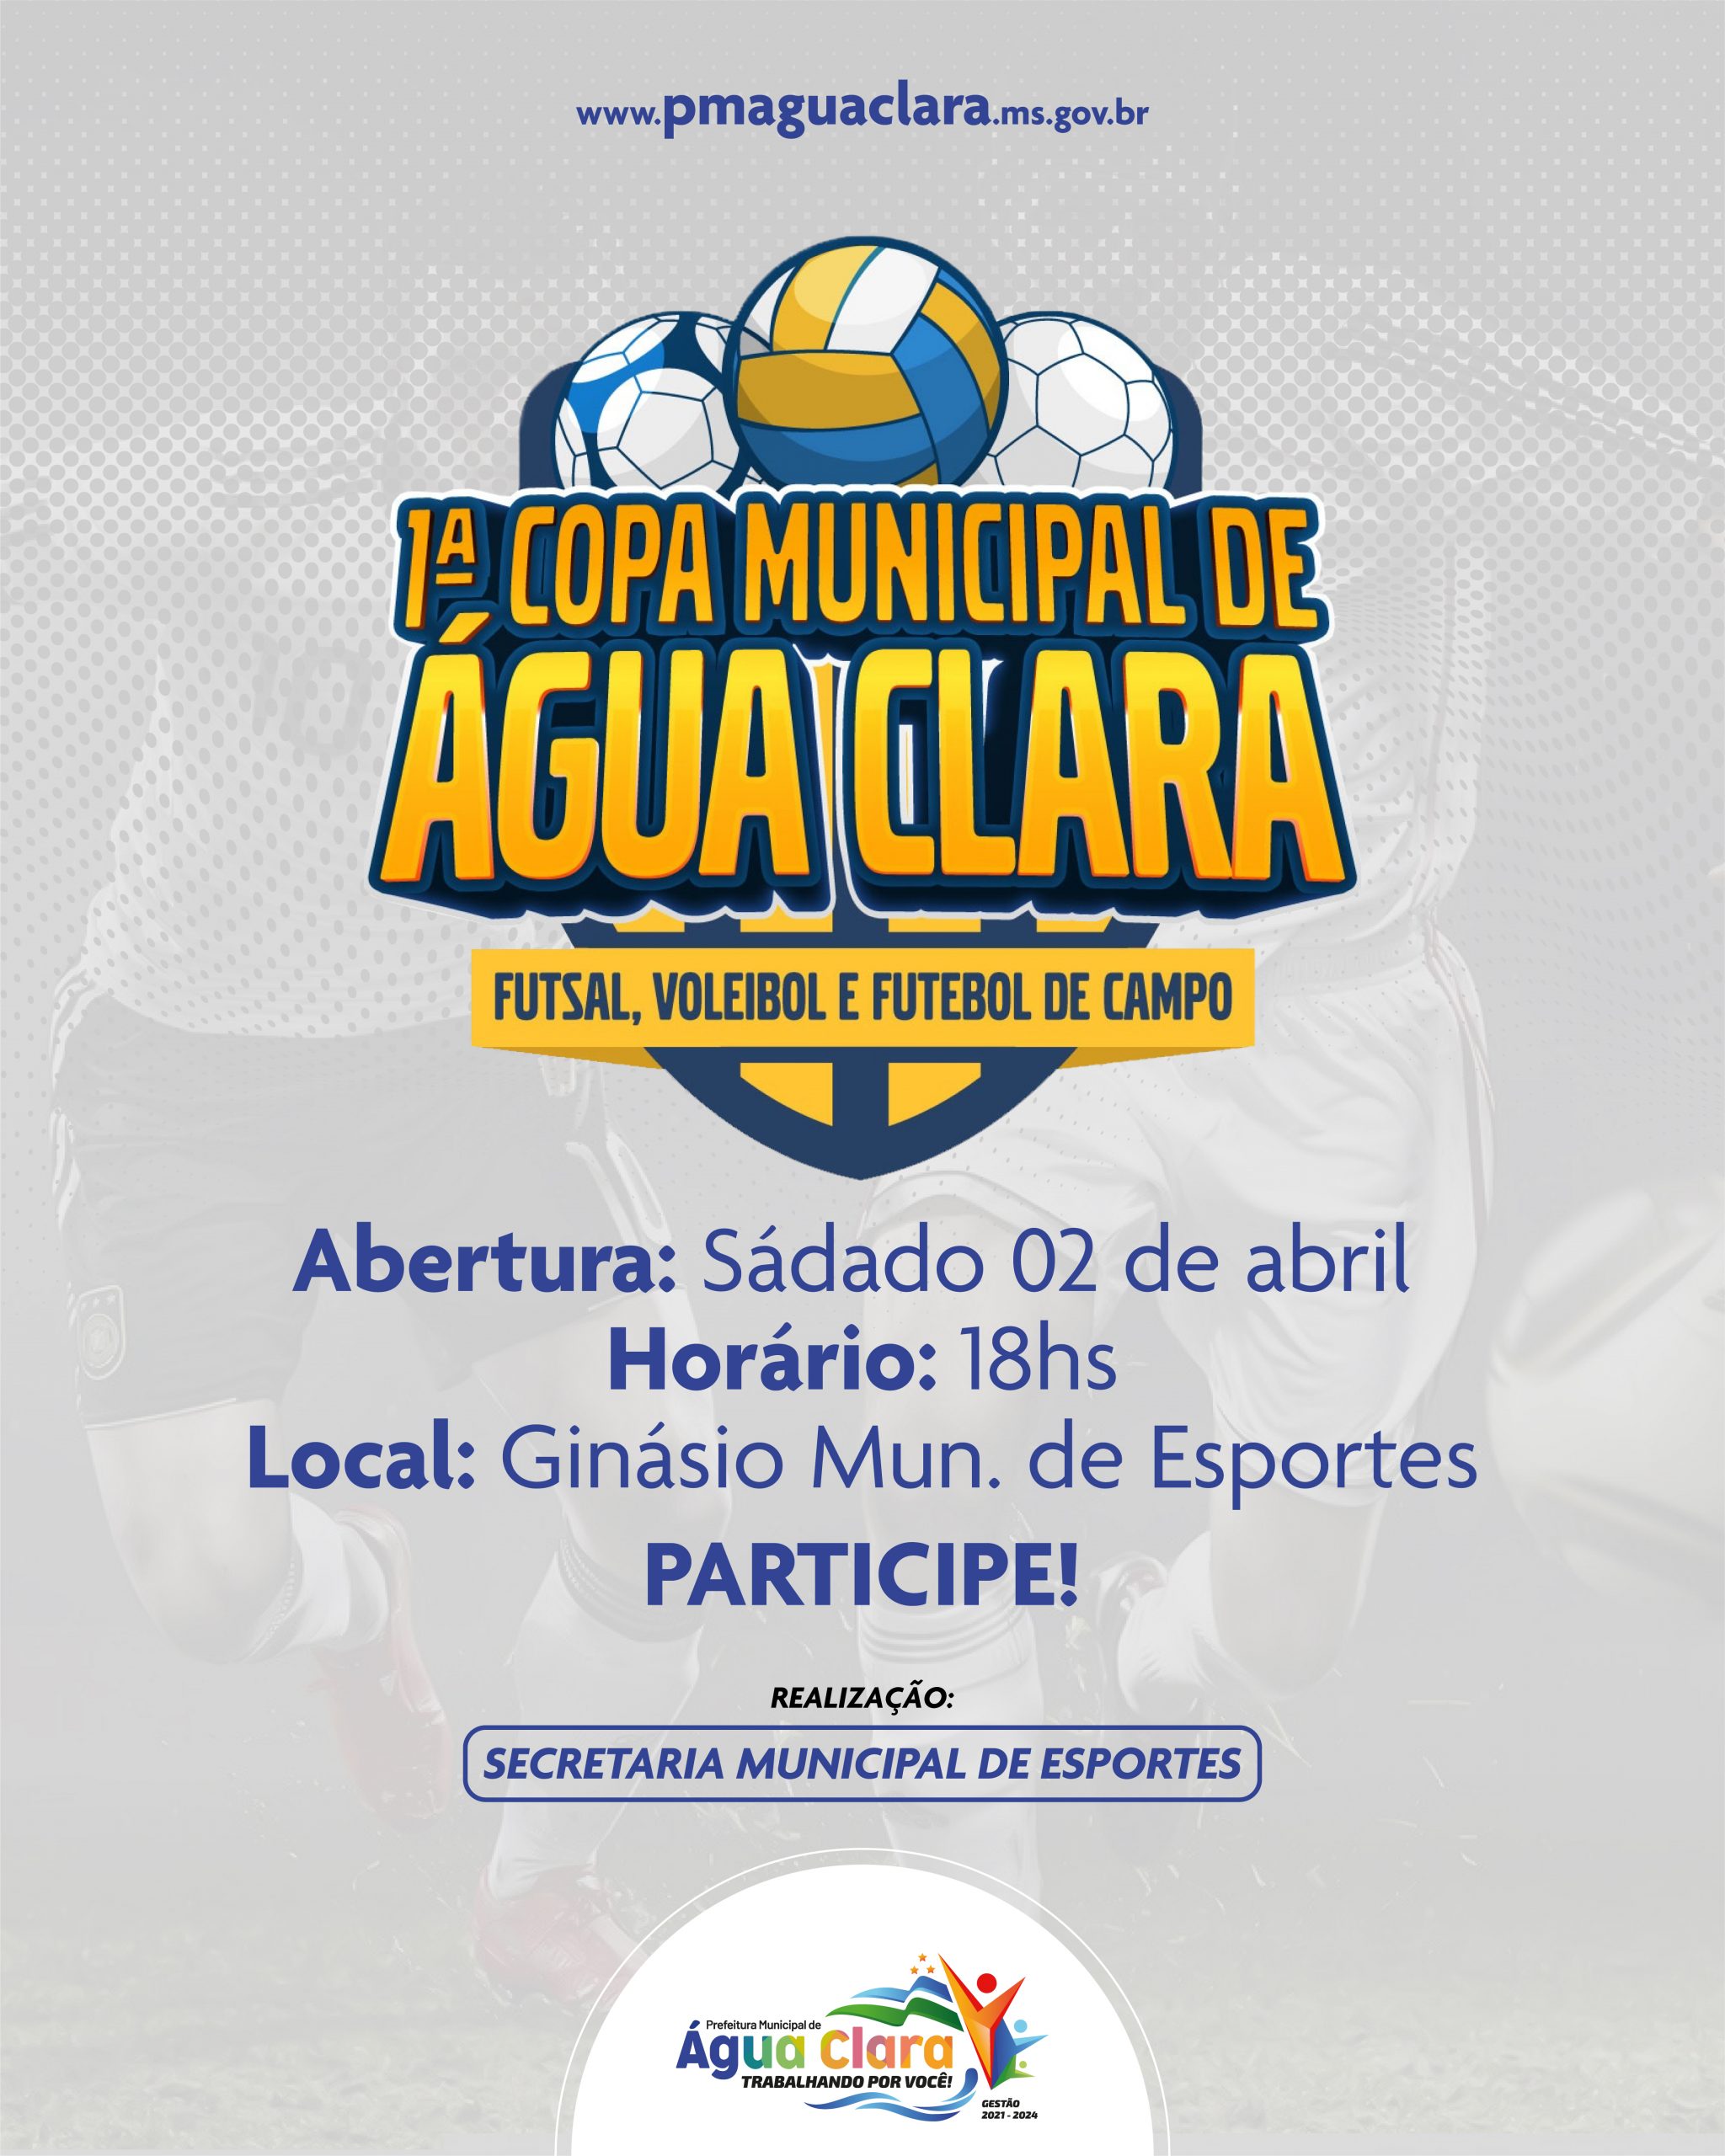 1ª Copa Municipal de Água Clara começa neste sábado (02)